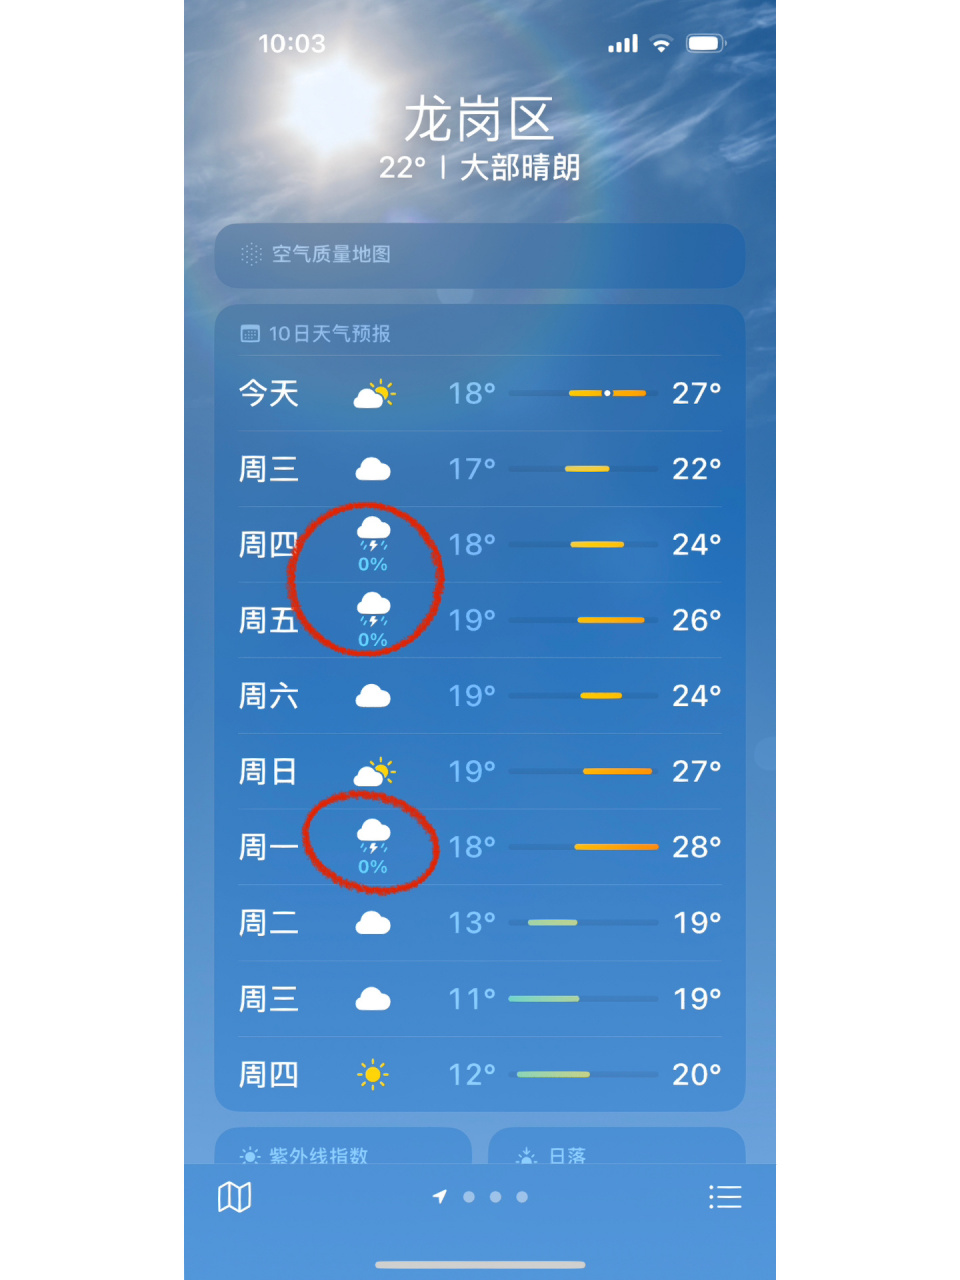 深圳天气预报七天图片